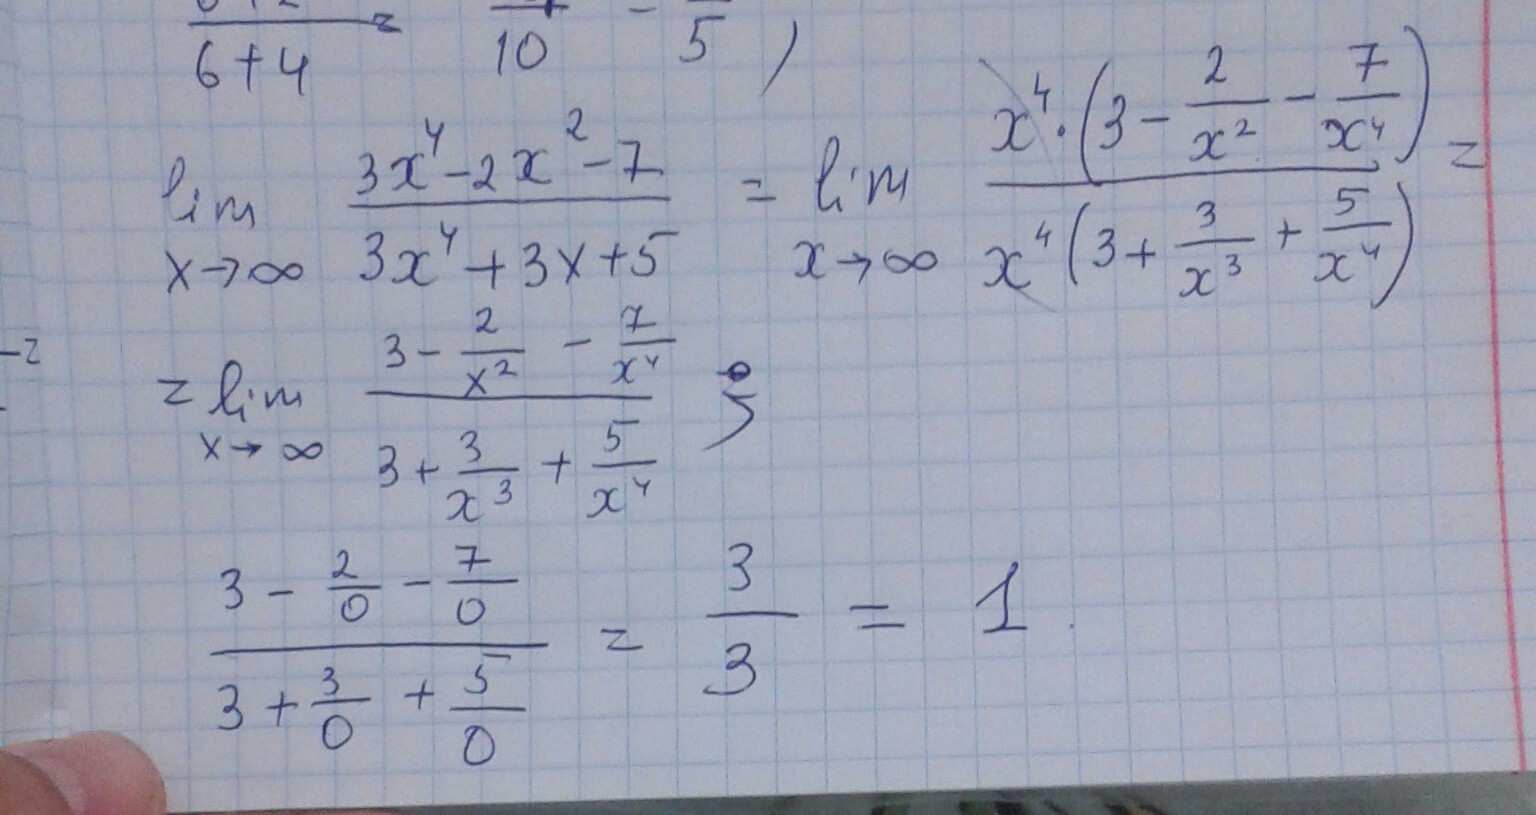 3 5 х 8 2 4х 7. Lim x стремится к бесконечности 2/x 2+3x. Lim x стремится к бесконечности x^2-4x+3/x+5. Lim x стремиться к бесконечности ( 2x/2x-3)^3x. Lim x стремится к бесконечности 3+x-5x4.